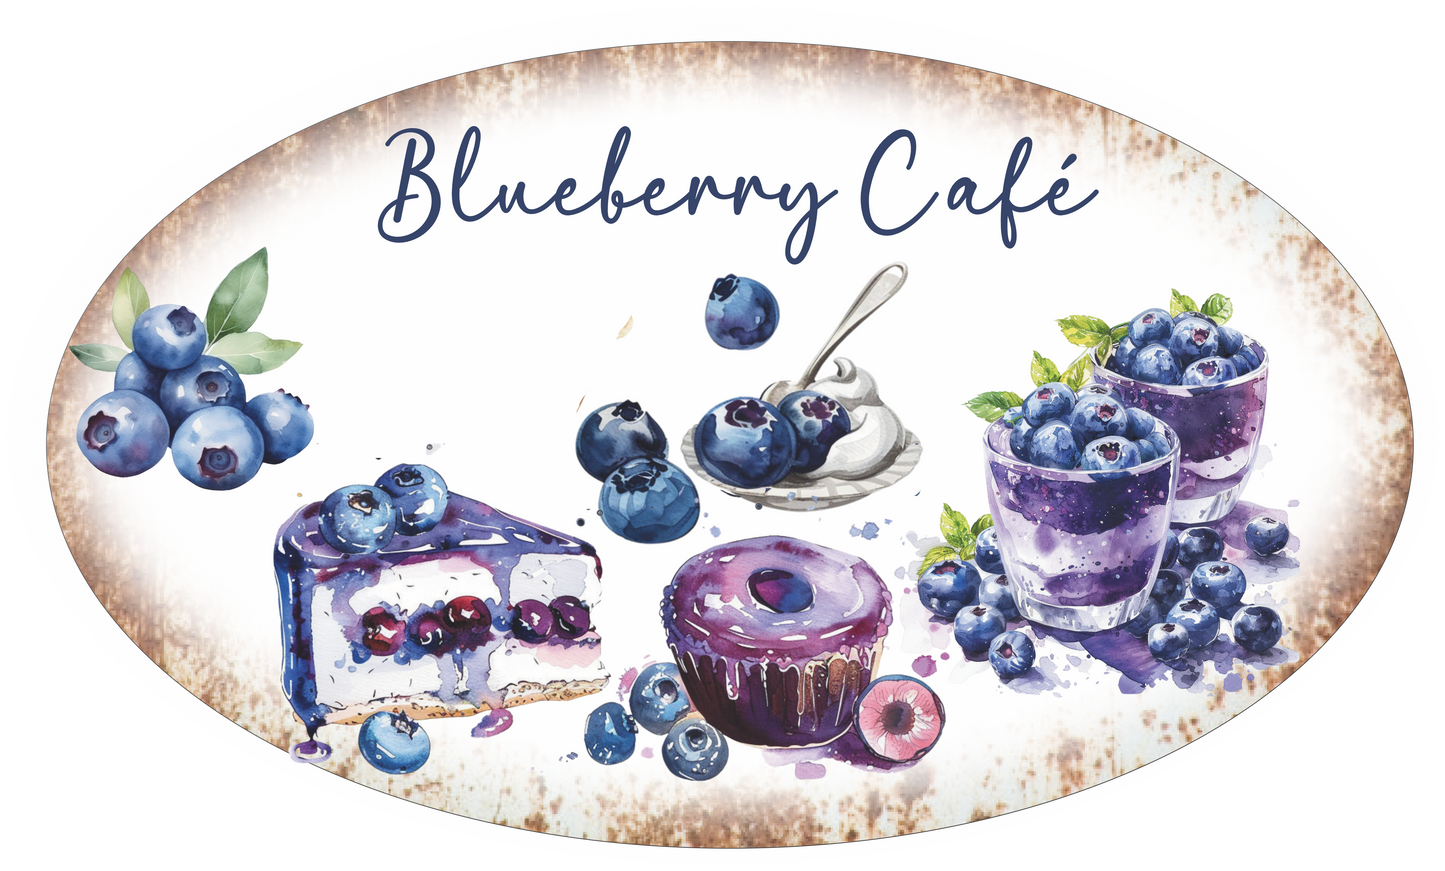 Blueberry cafe vintage sign Oval